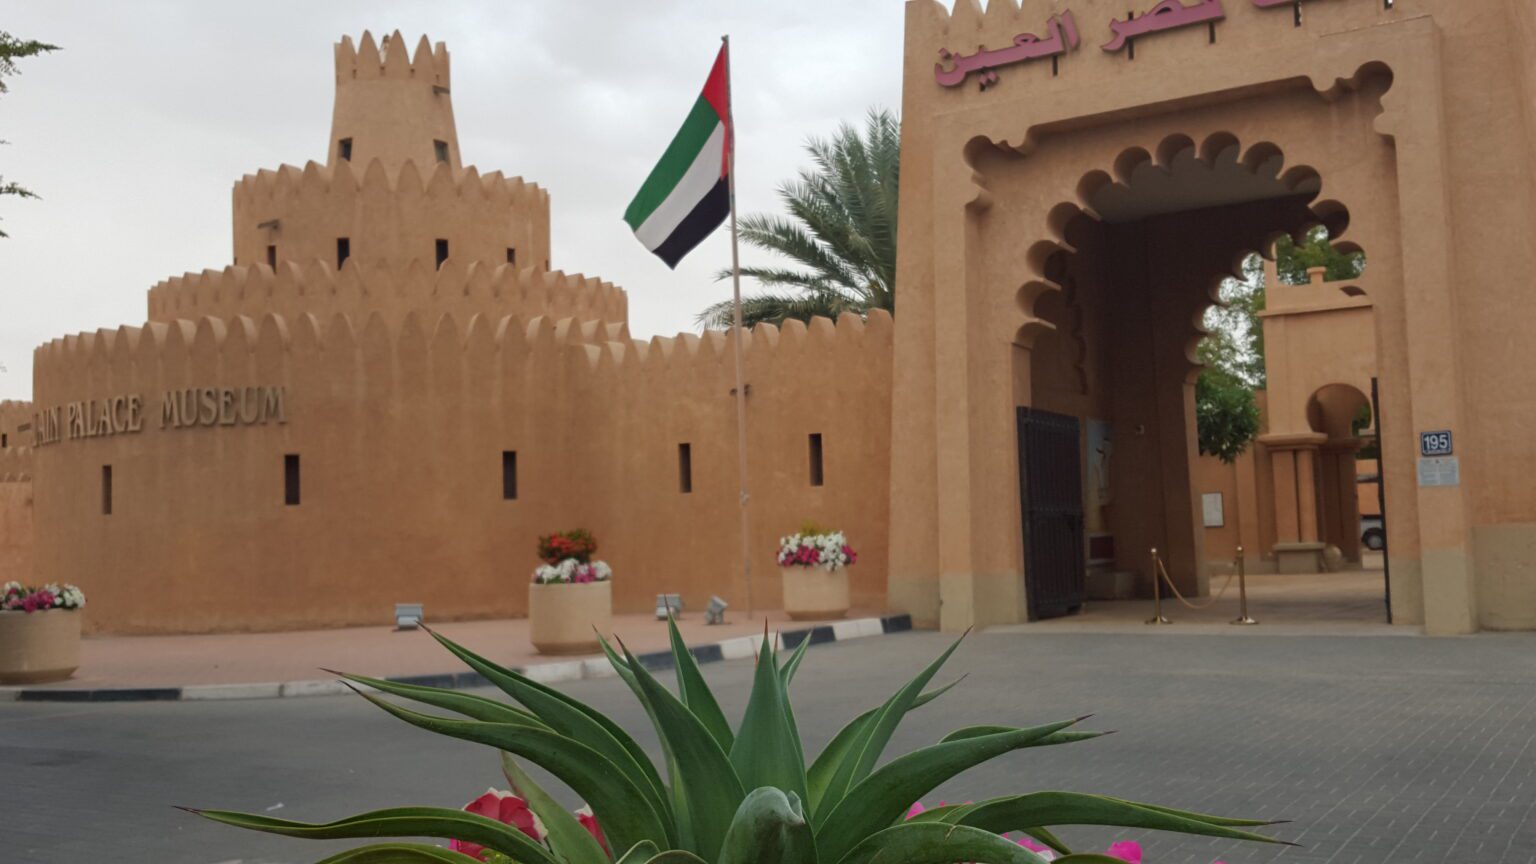 Al Ain Oasis Tour comença des d'Abu Dhabi